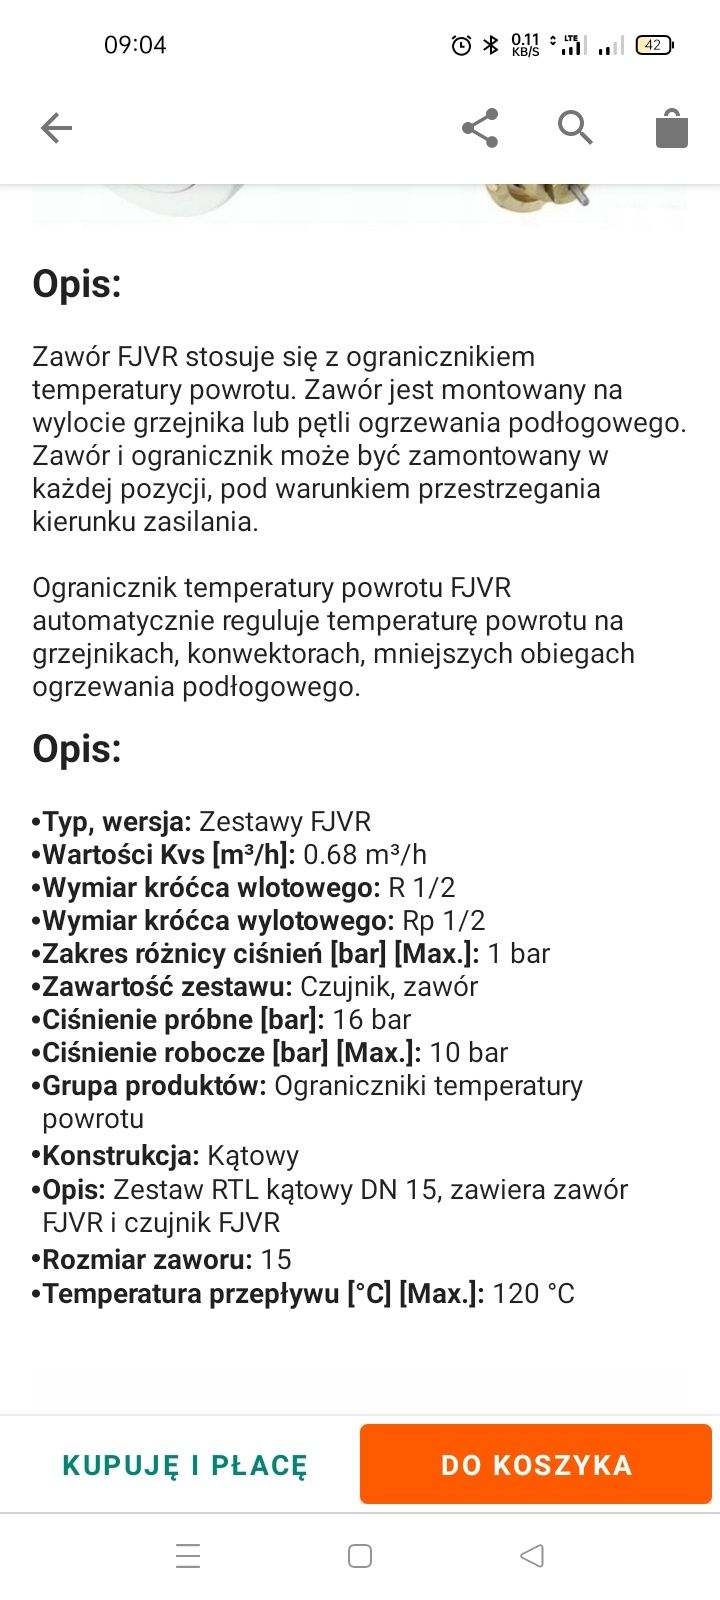 DANFOSS zestaw KĄTOWY RTL do podłogówki 1/2